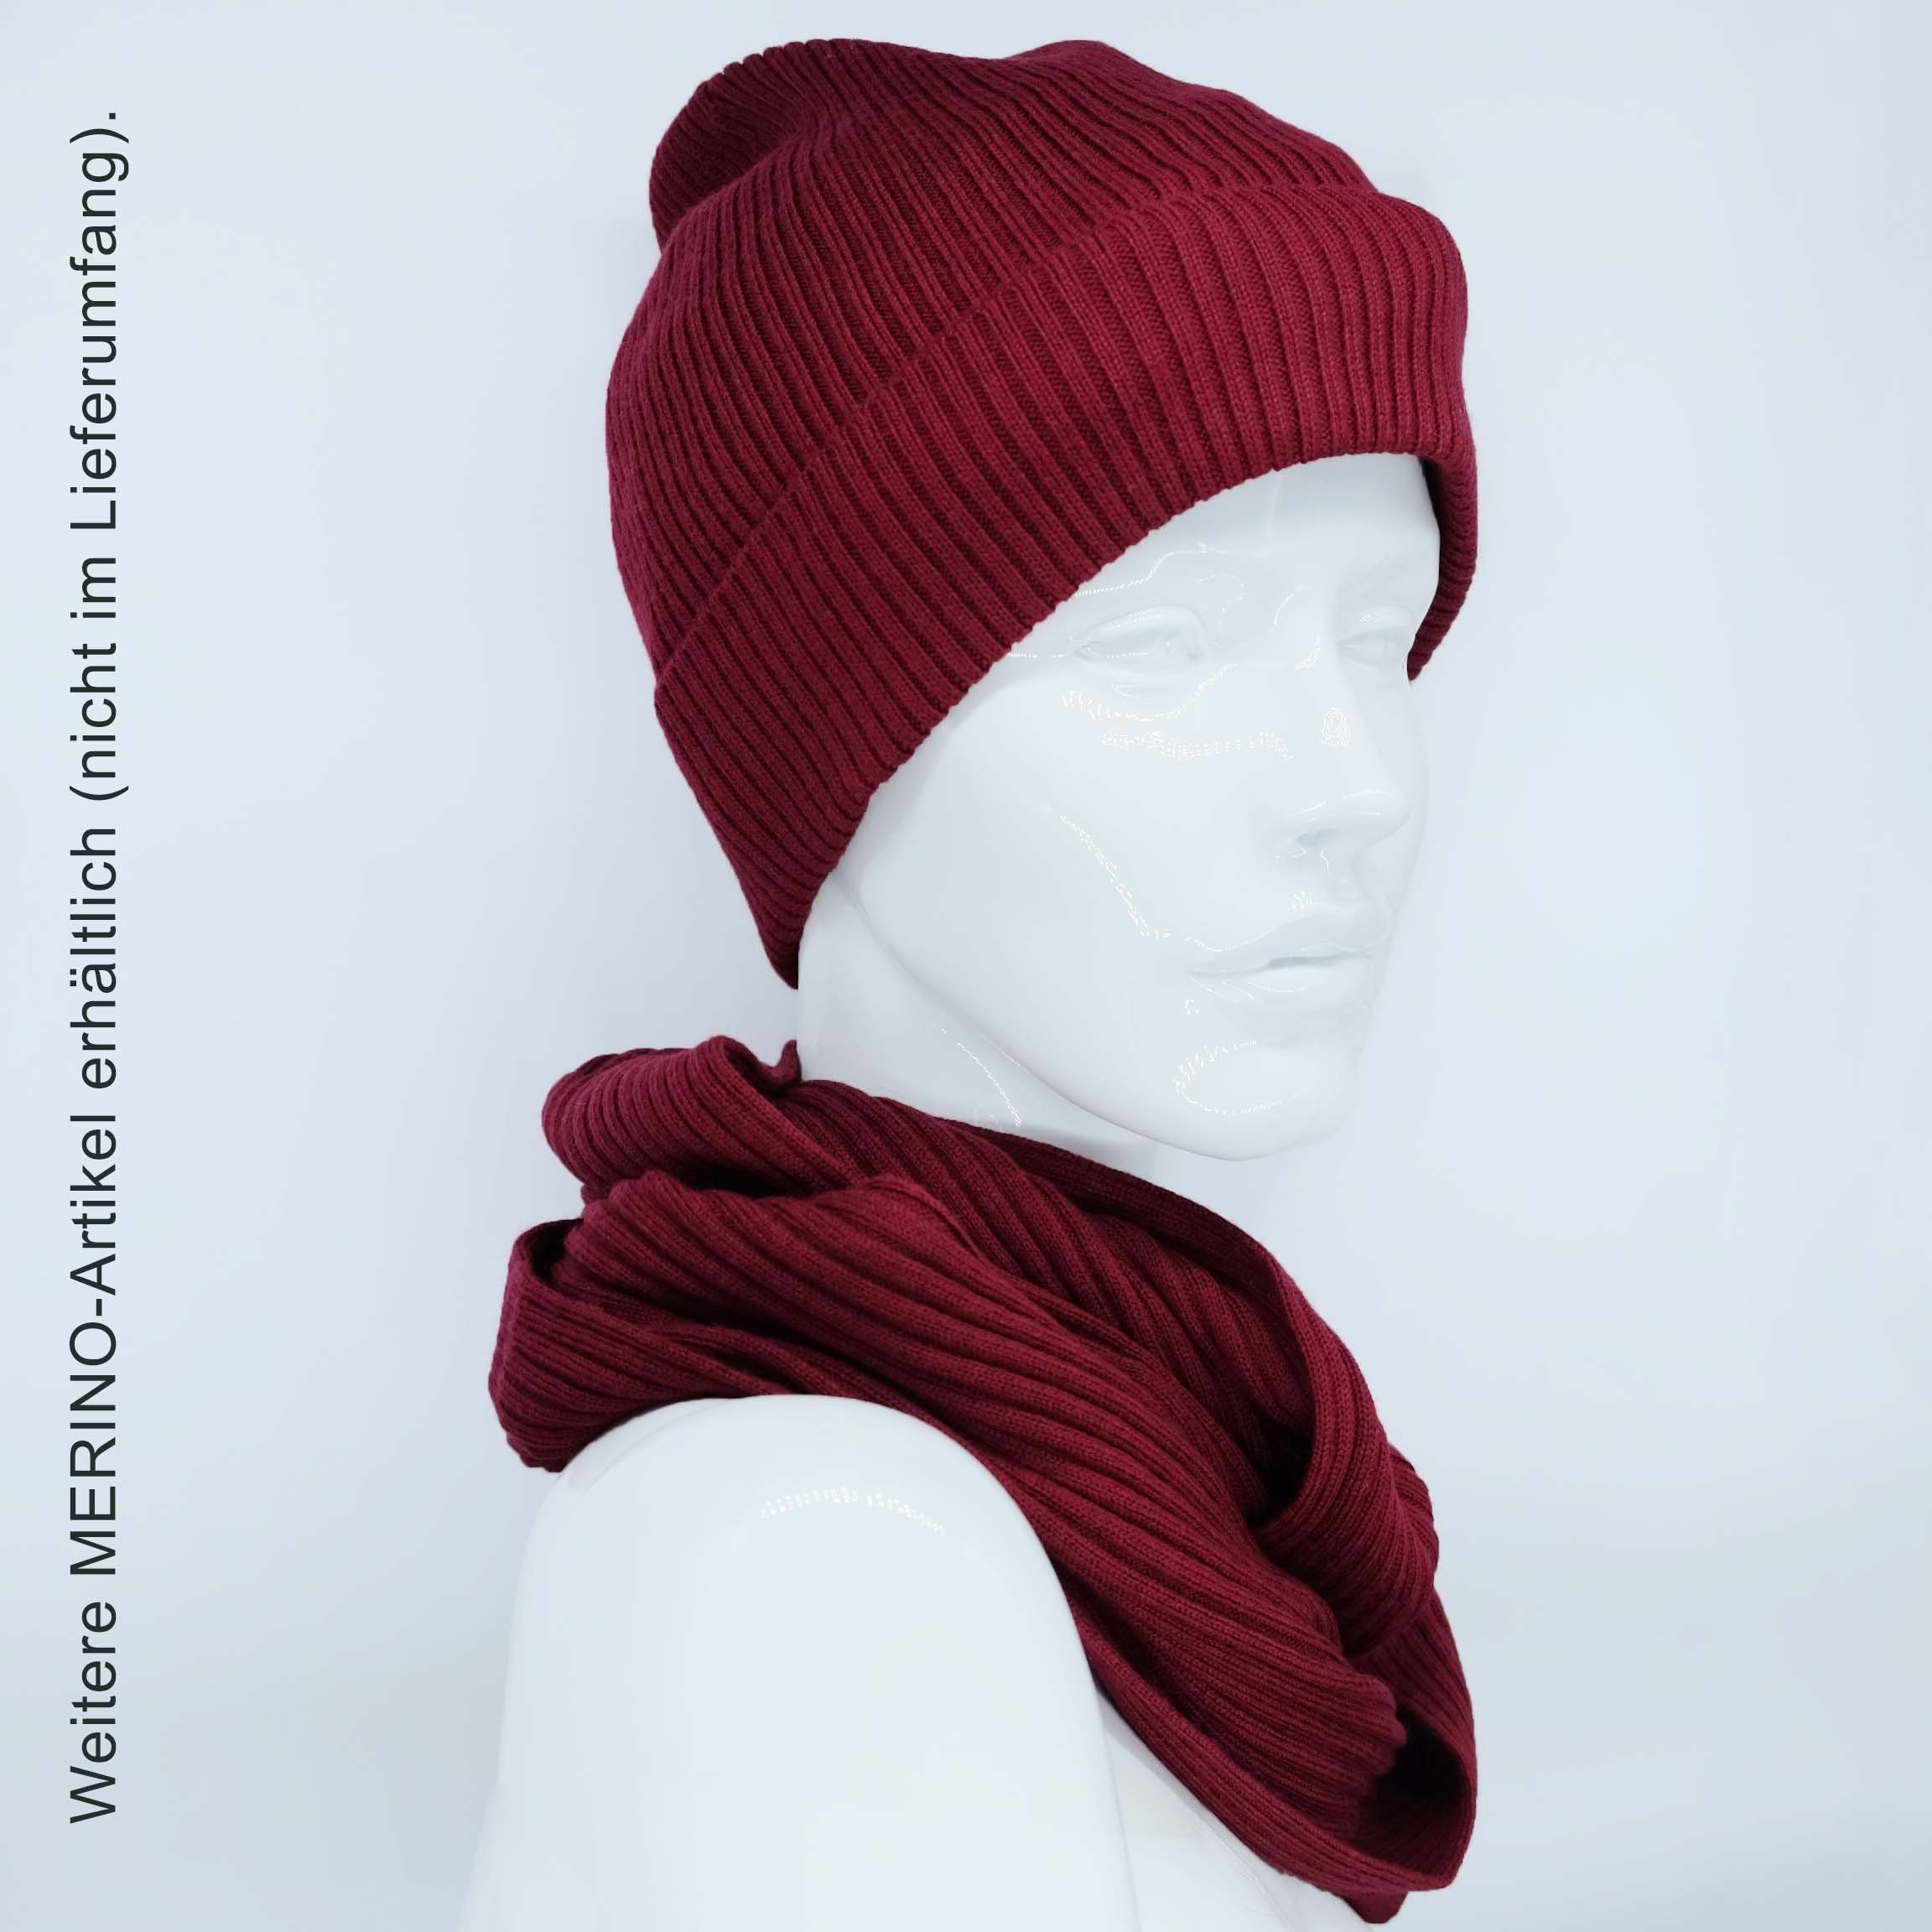 BEAZZ Stirnband Stirnband und WOLLE Feinstrick, rot helles Merino warm 100% merlot weich Damen Winter Ohrenwärmer